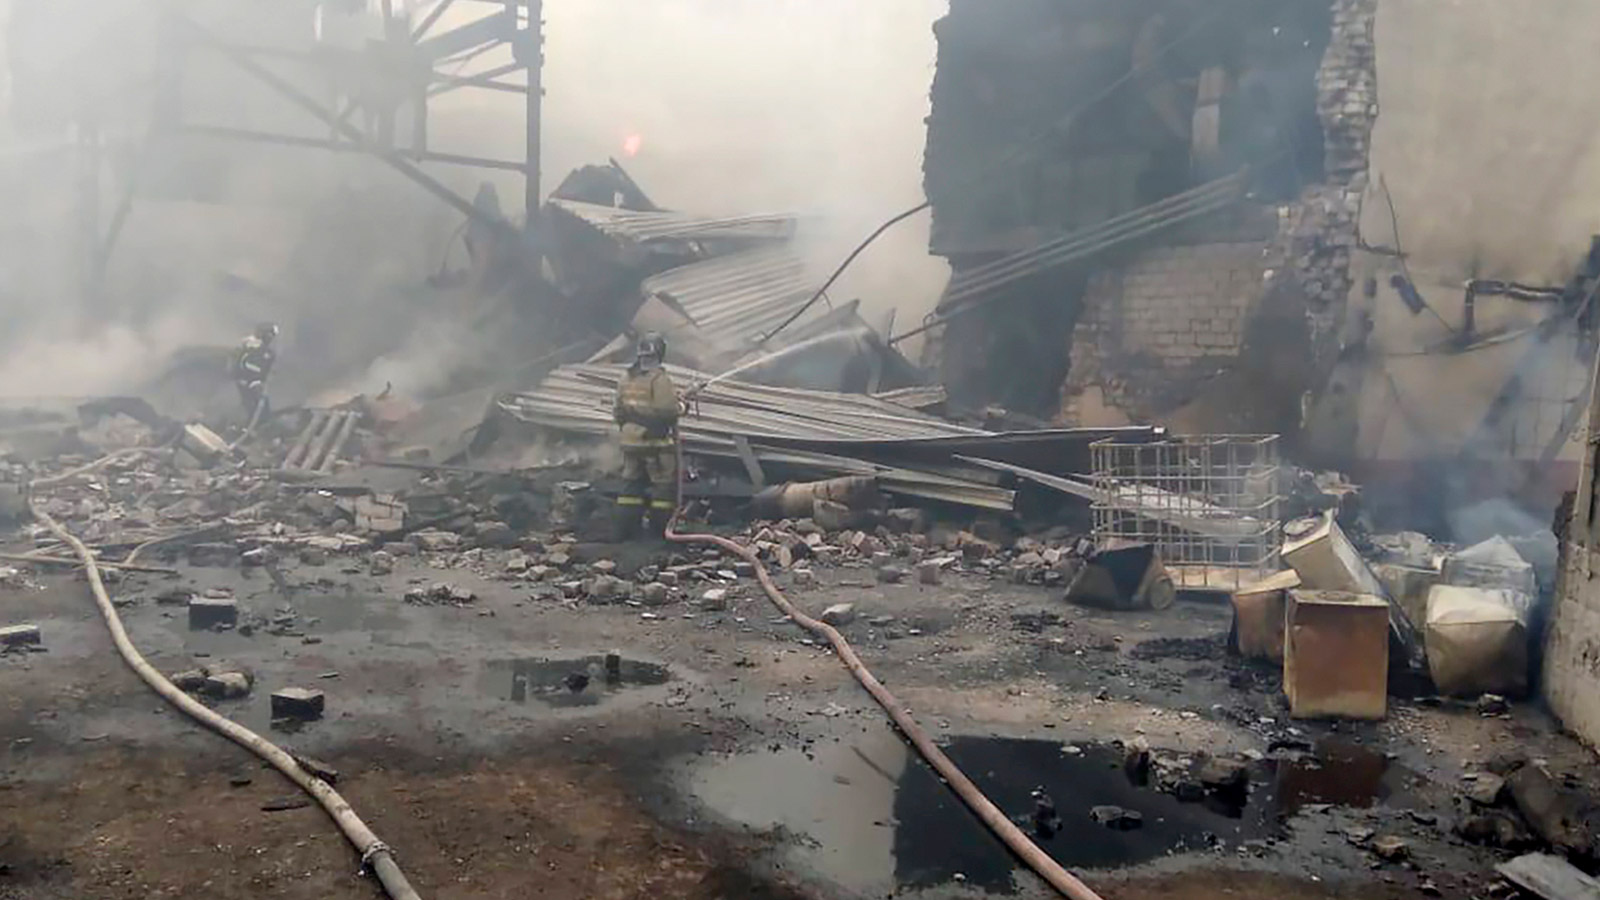 Ρωσία: Δύο άνθρωποι τραυματίστηκαν από έκρηξη στην πόλη Μπέλγκοροντ